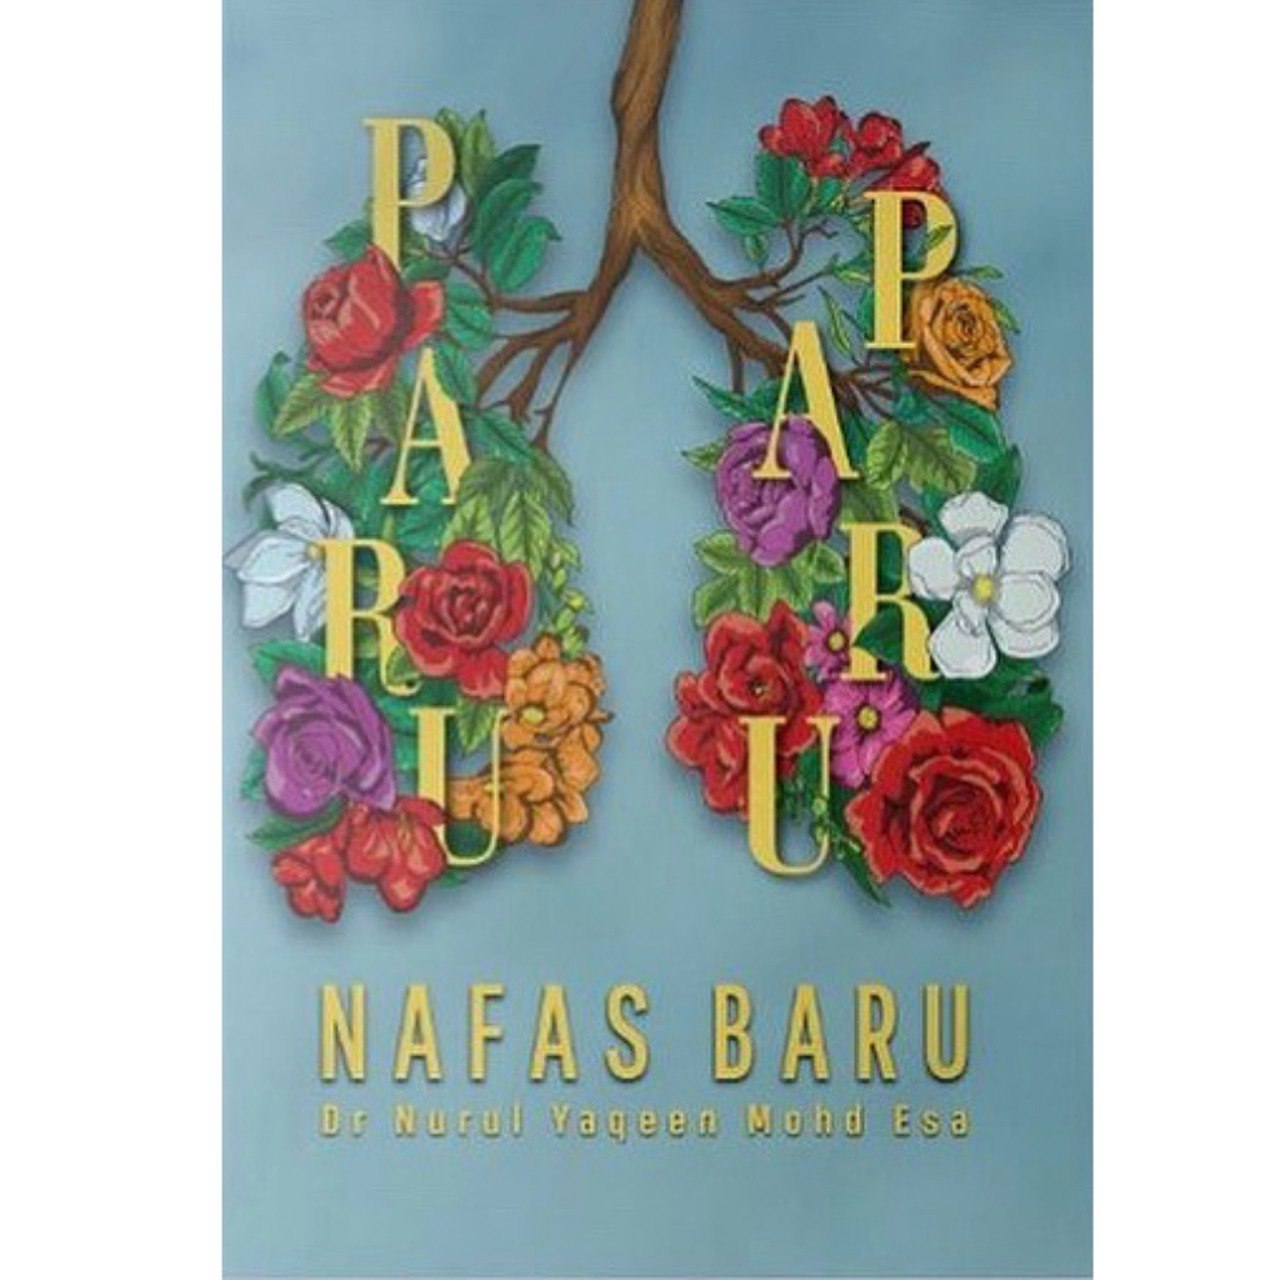 WhiteCoat Buku Paru Paru Nafas Baru by Dr Nurul Yaqeen Mohd Esa 201171